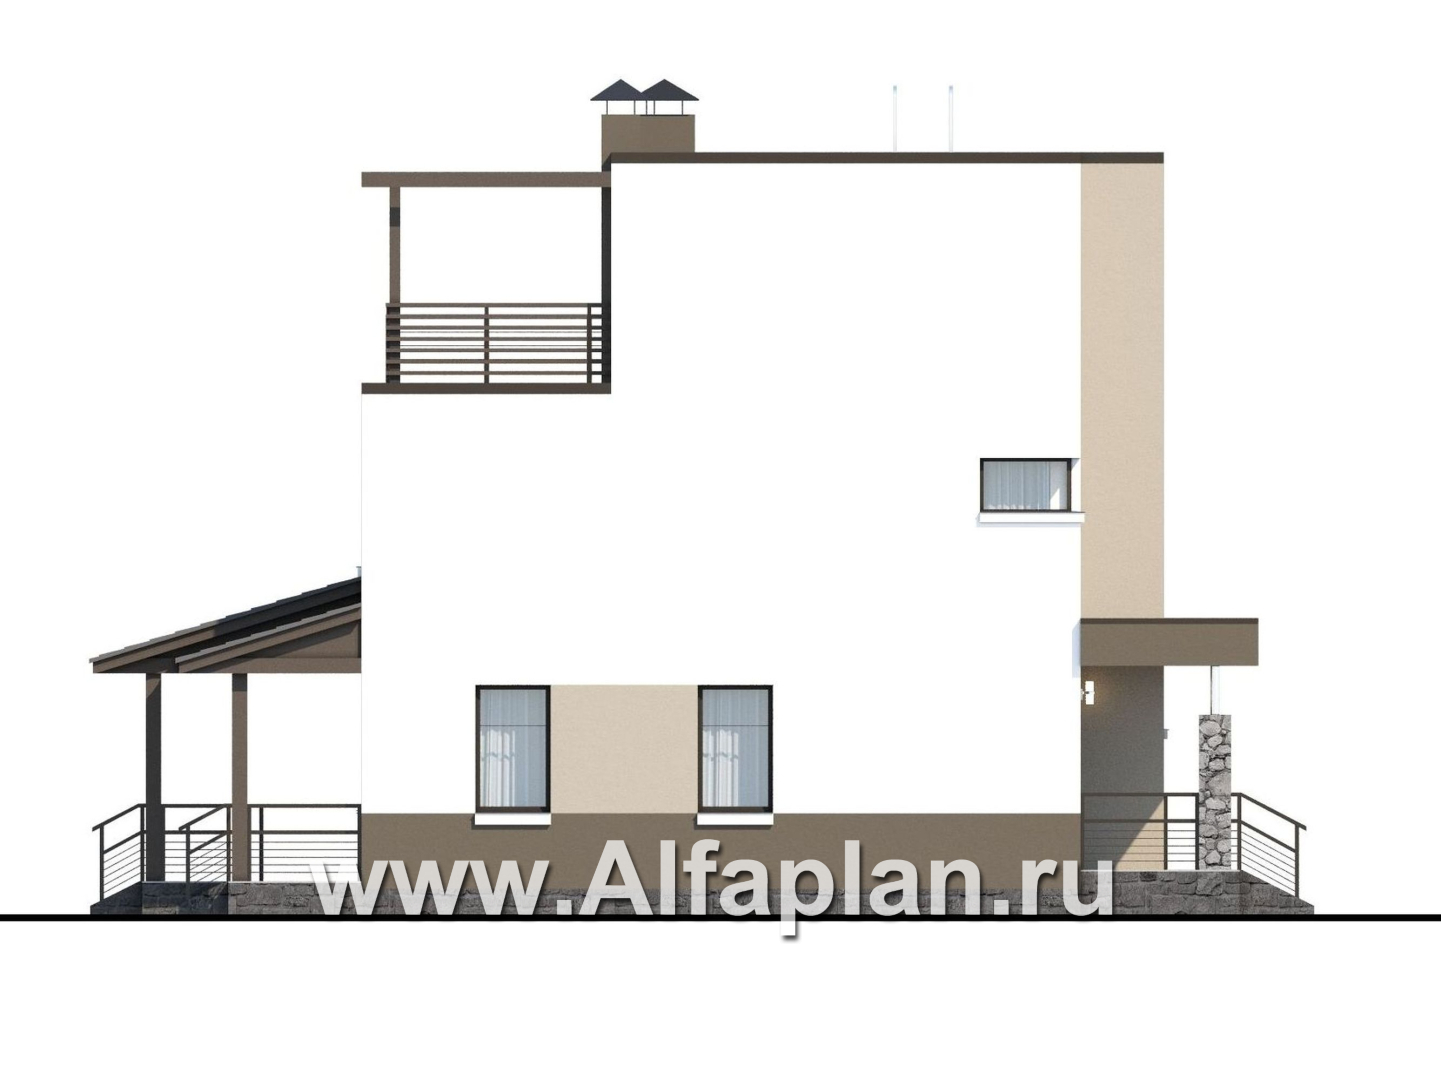 Проекты домов Альфаплан - «Приоритет» - проект двухэтажного дома из газобетона, с открытой планировкой,  с эксплуатируемой крышей, в стиле хай-тек - изображение фасада №3